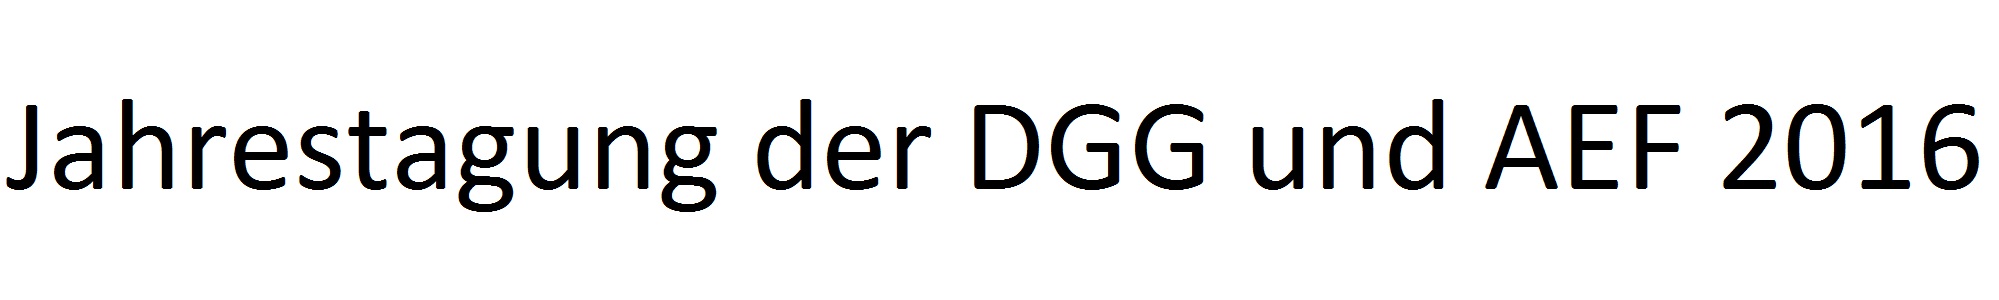 DGG-2016